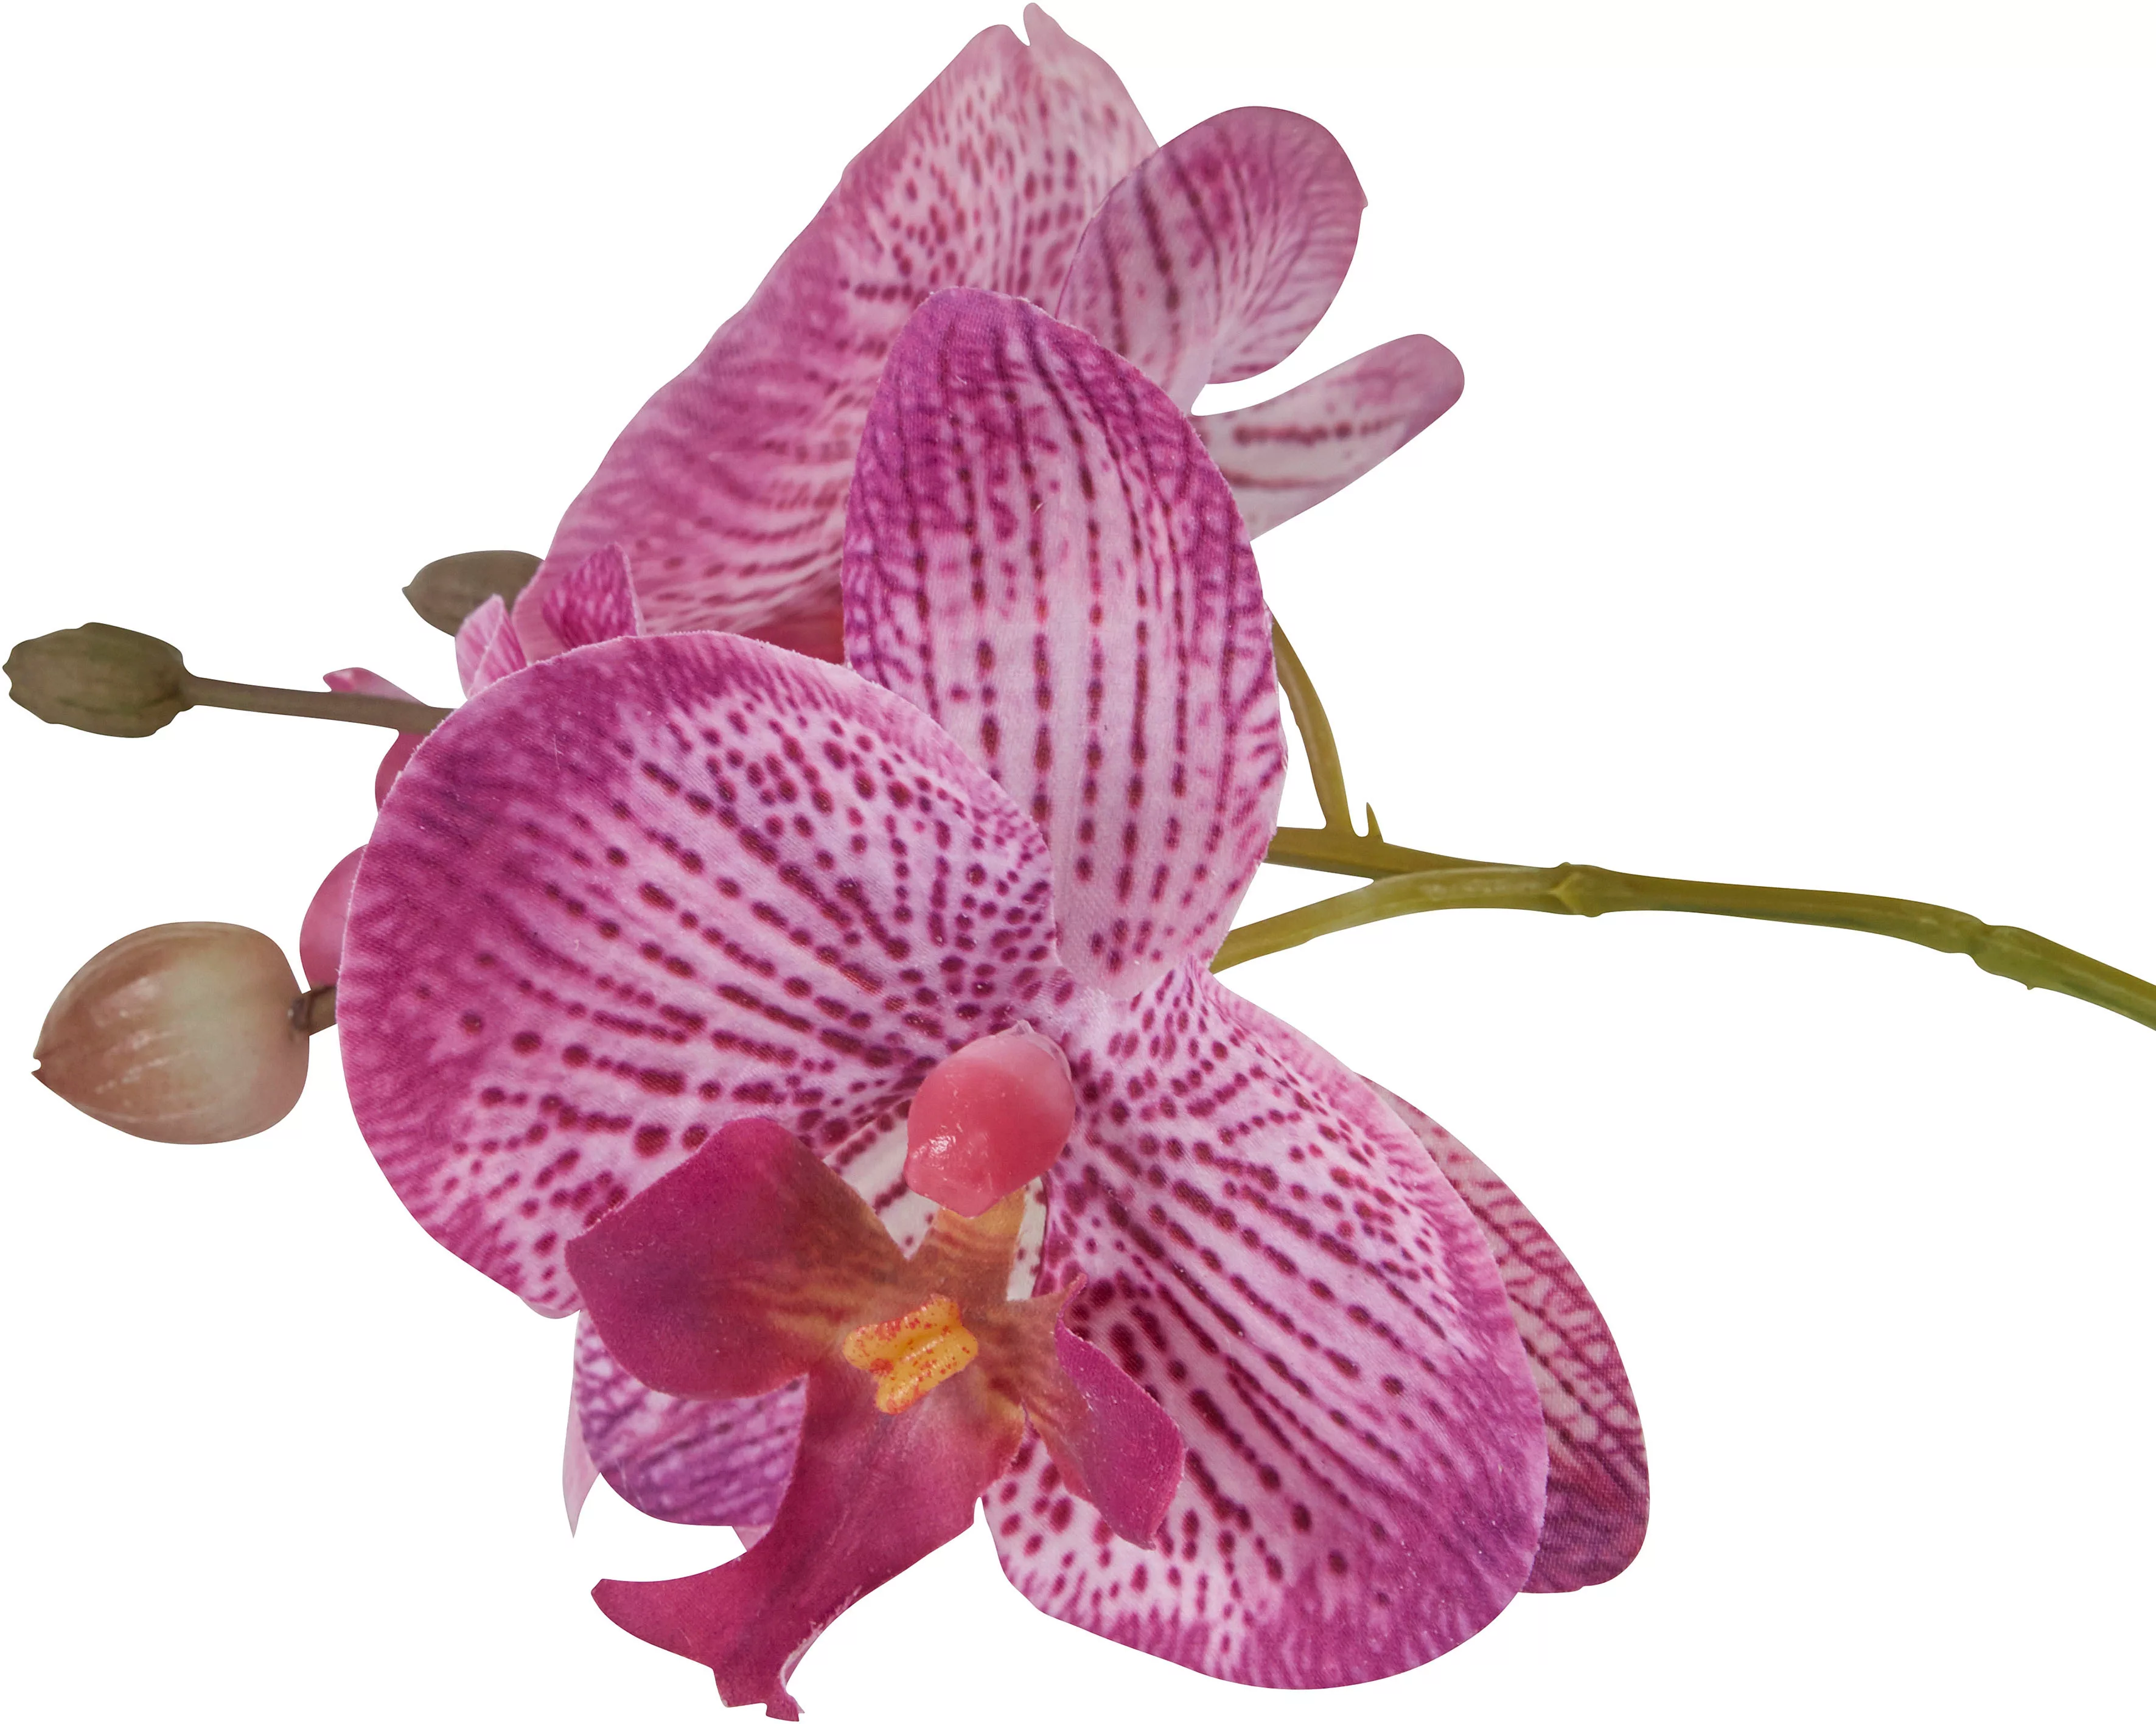 Home affaire Kunstpflanze "Orchidee" günstig online kaufen